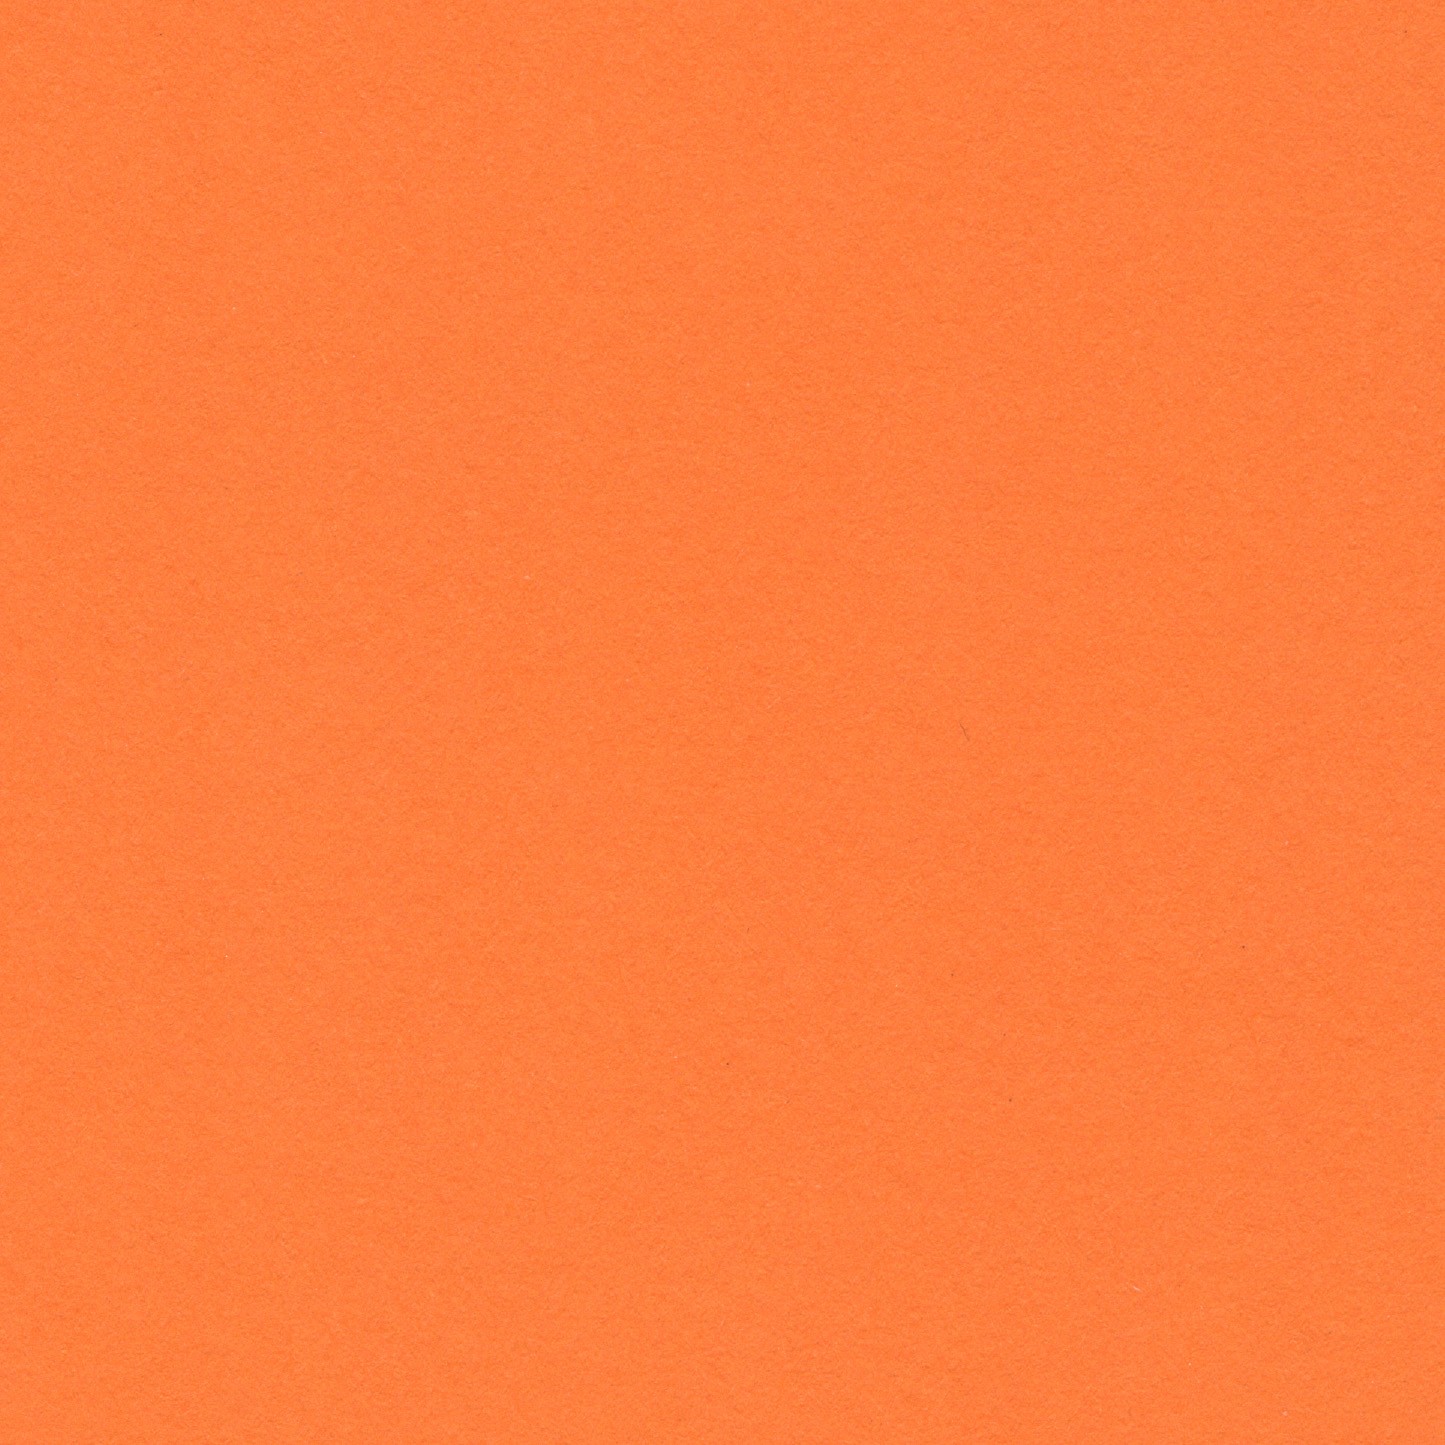 Orange - Clementine 150gsm